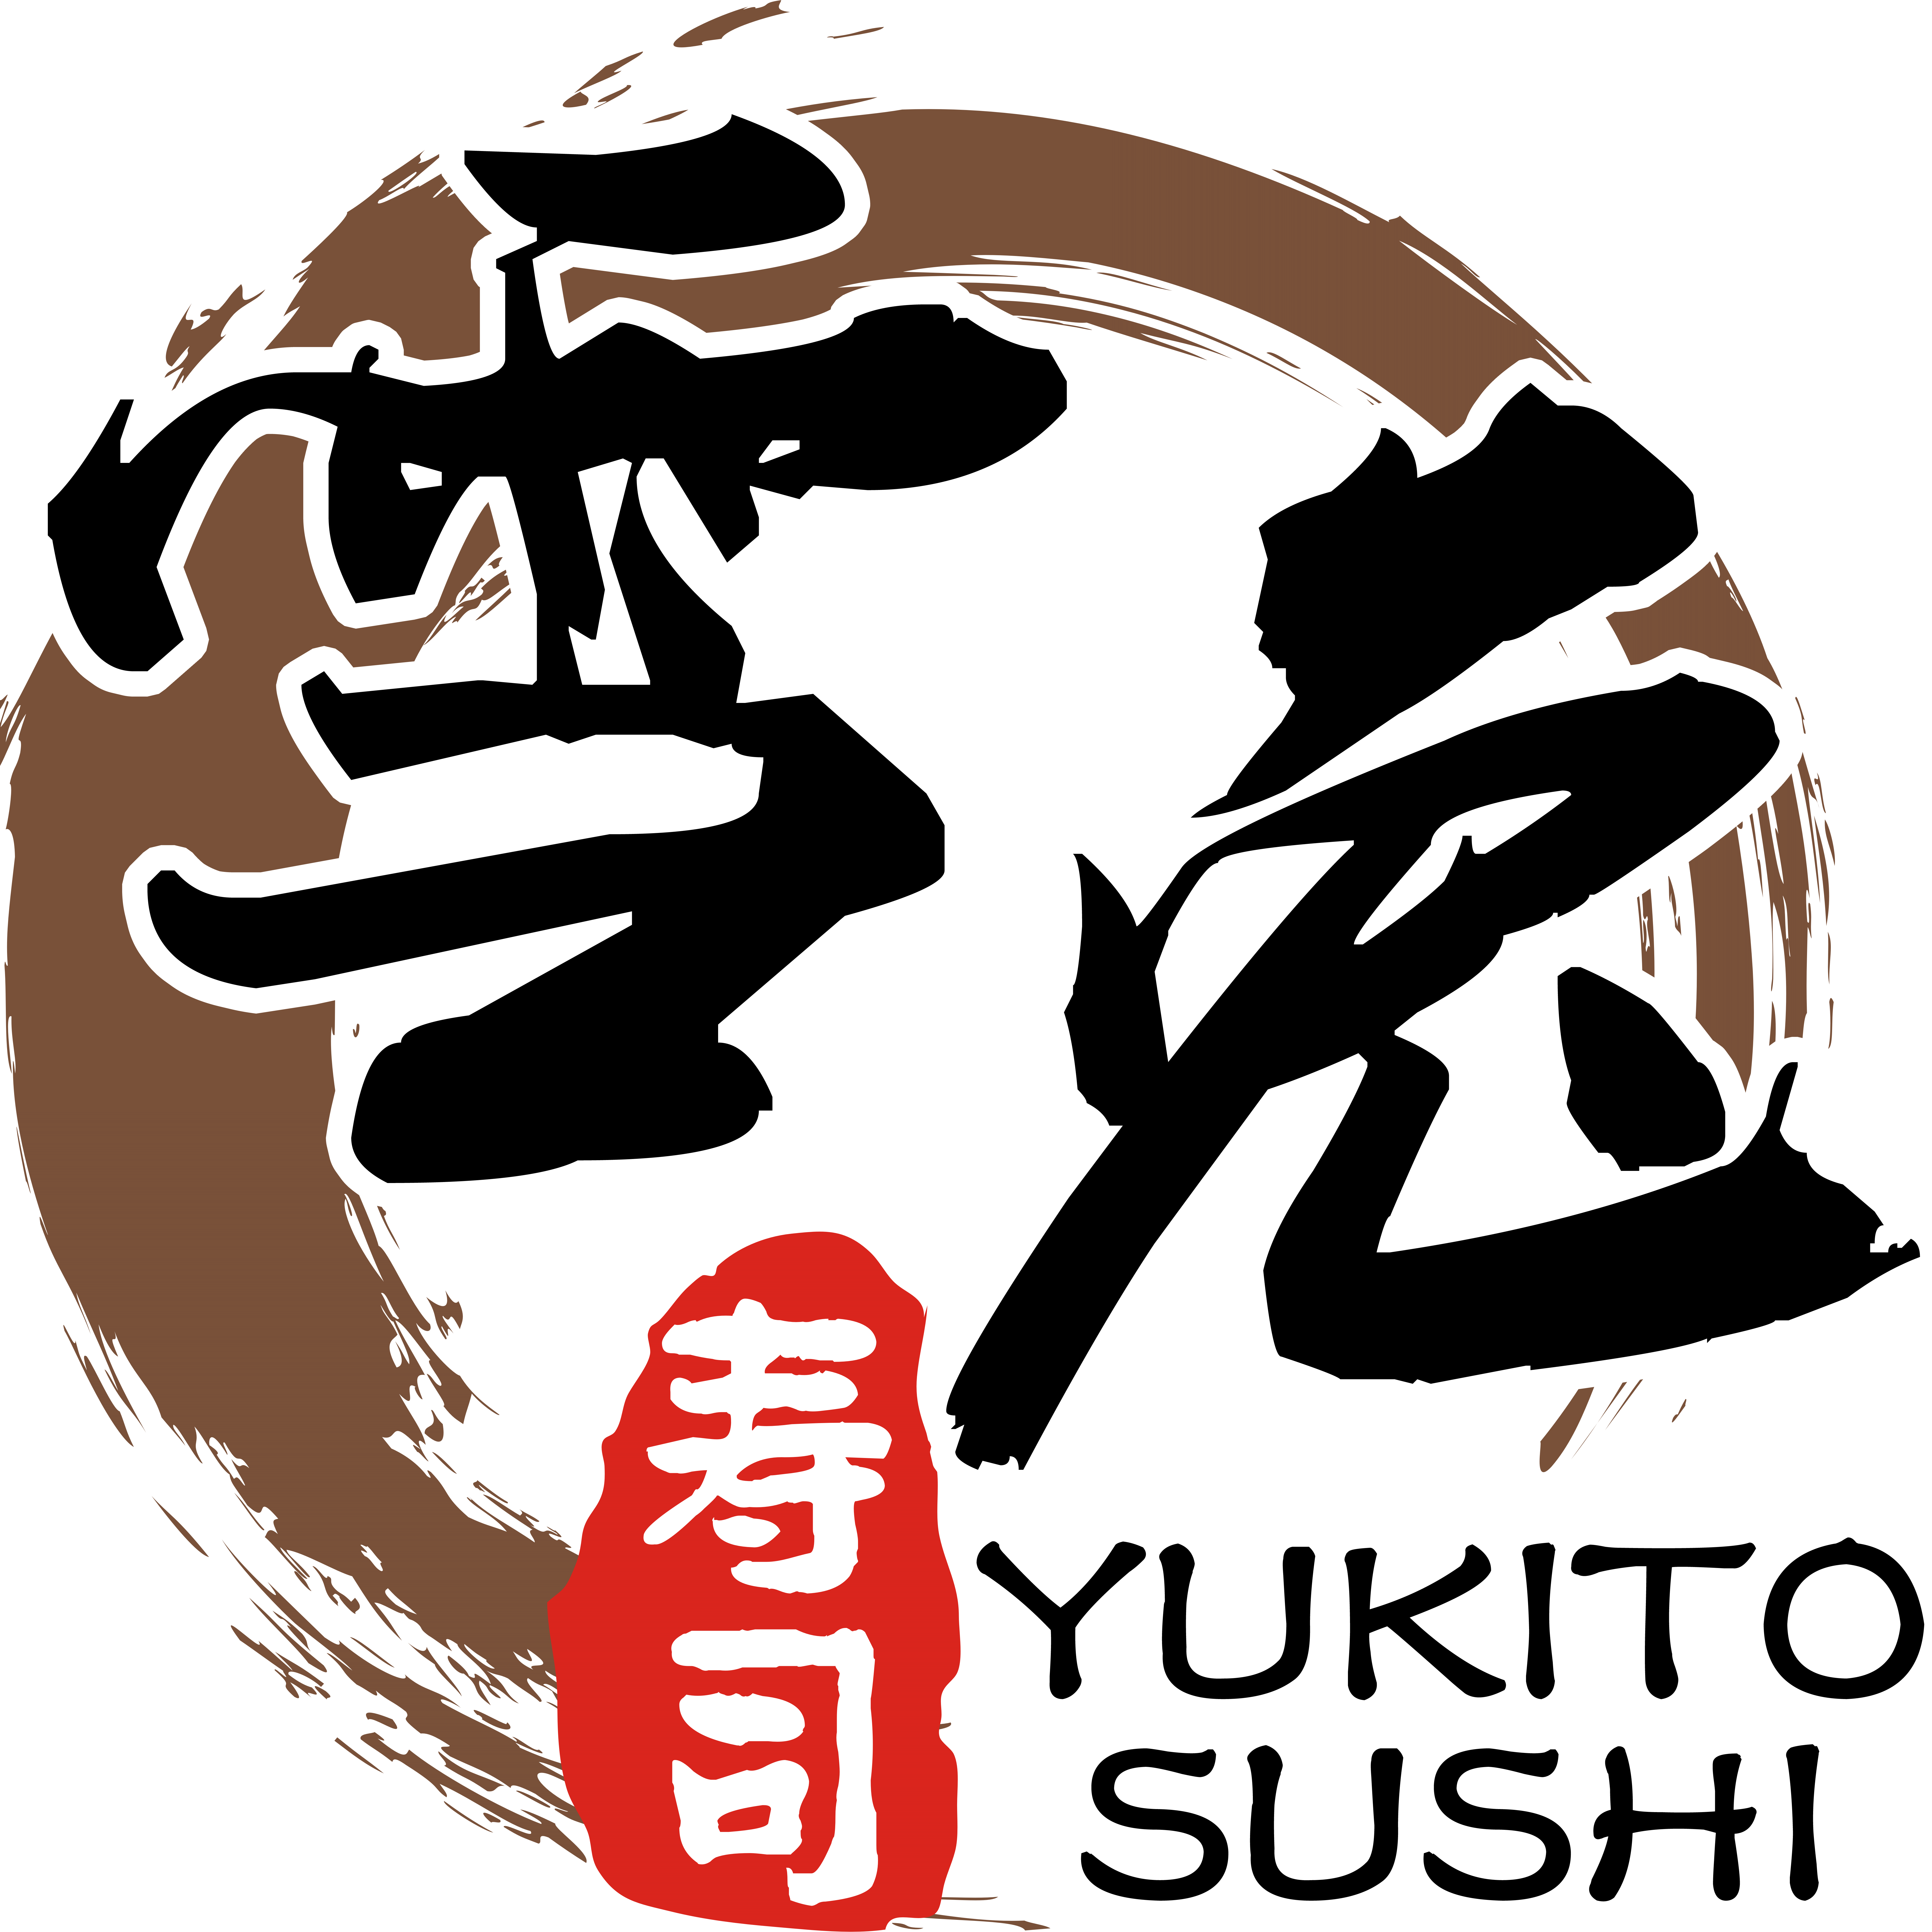 YUKITO SUSHI